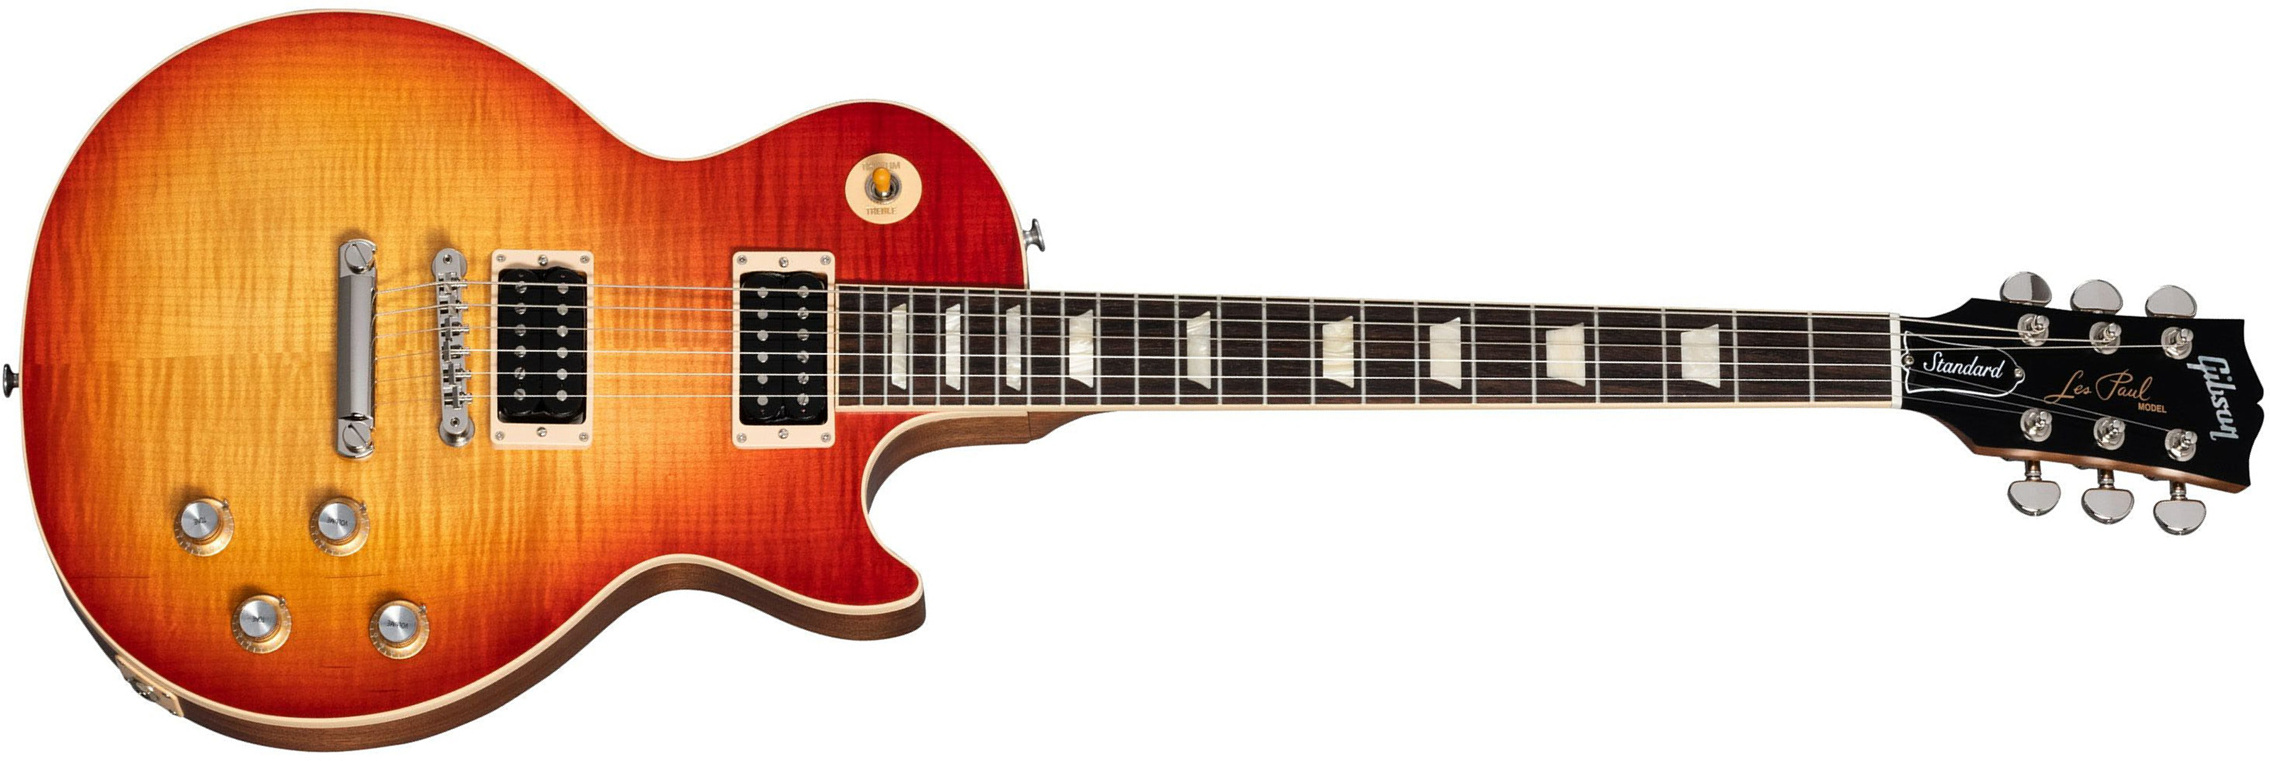 Gibson Les Paul Standard 60s Faded Original 2h Ht Rw - Vintage Cherry Sunburst - Guitarra eléctrica de corte único. - Main picture